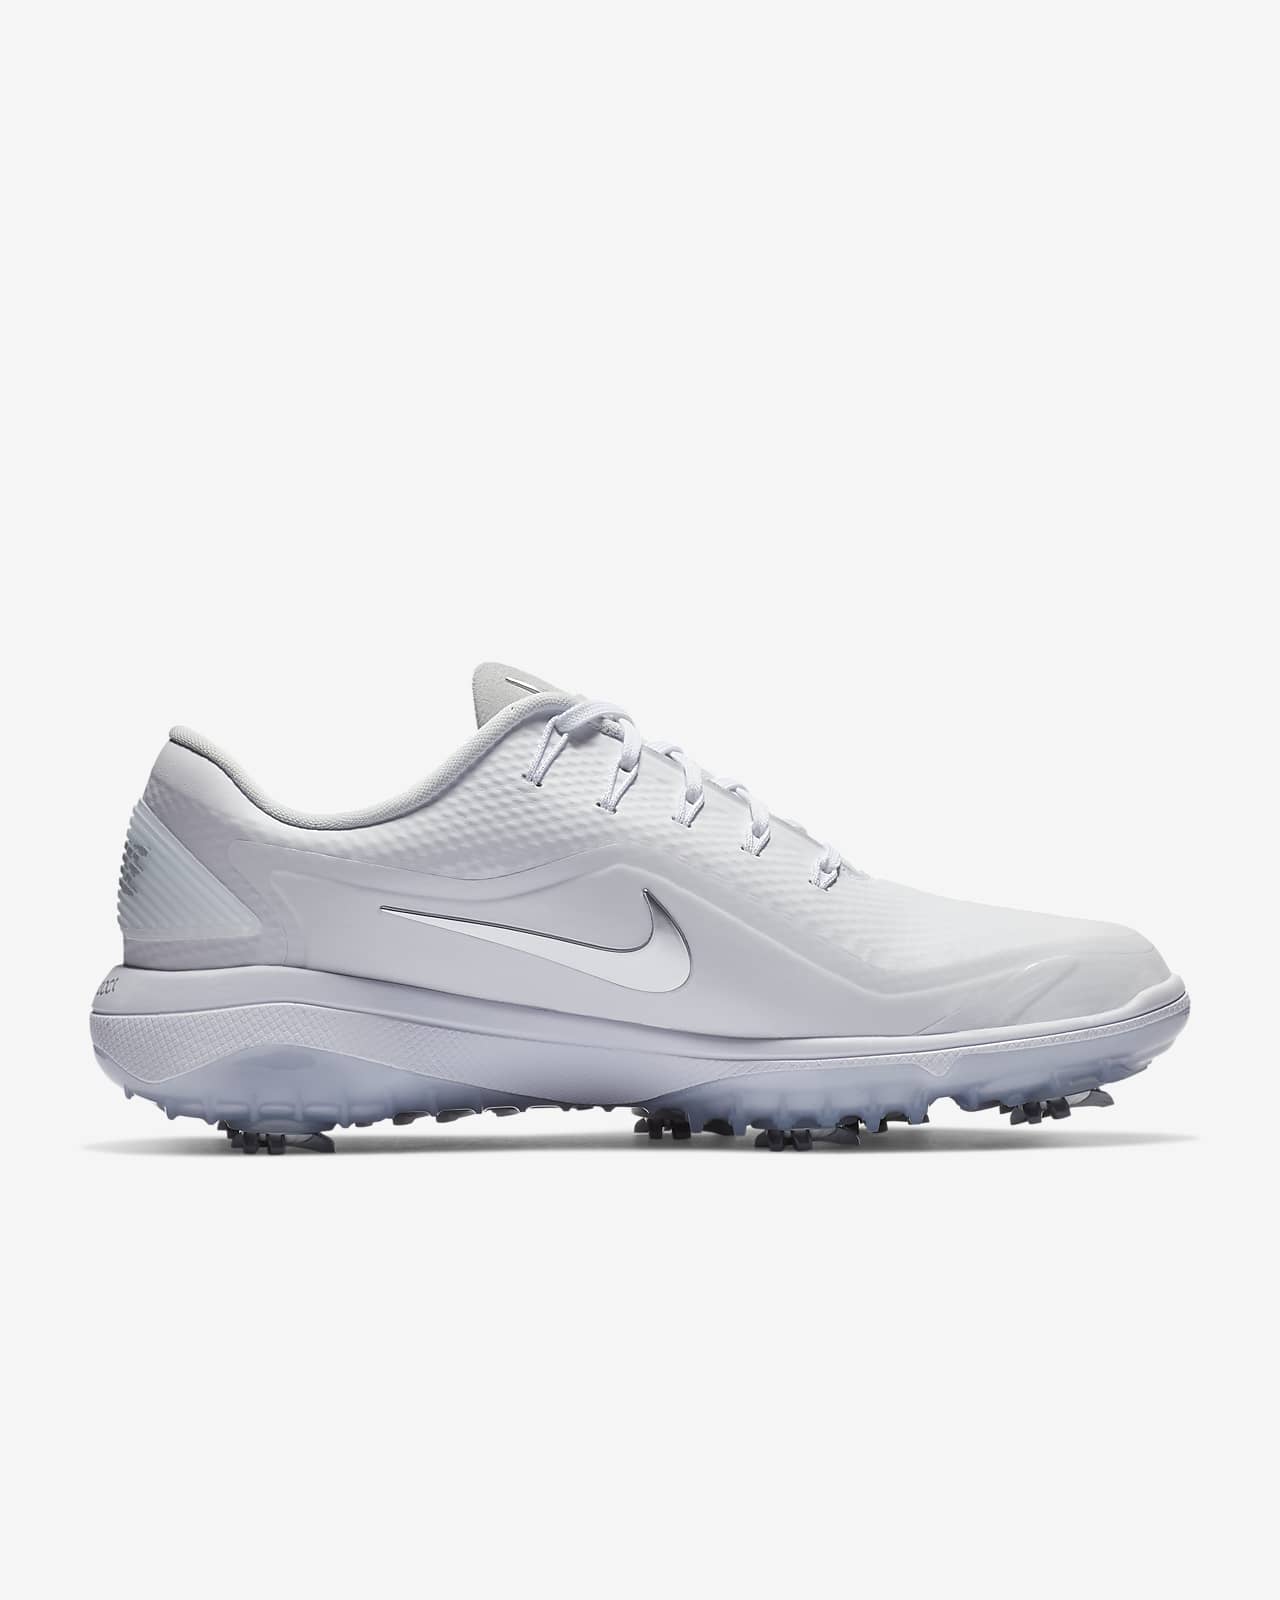 Nike React Vapor 2 Women's Golf Shoe 